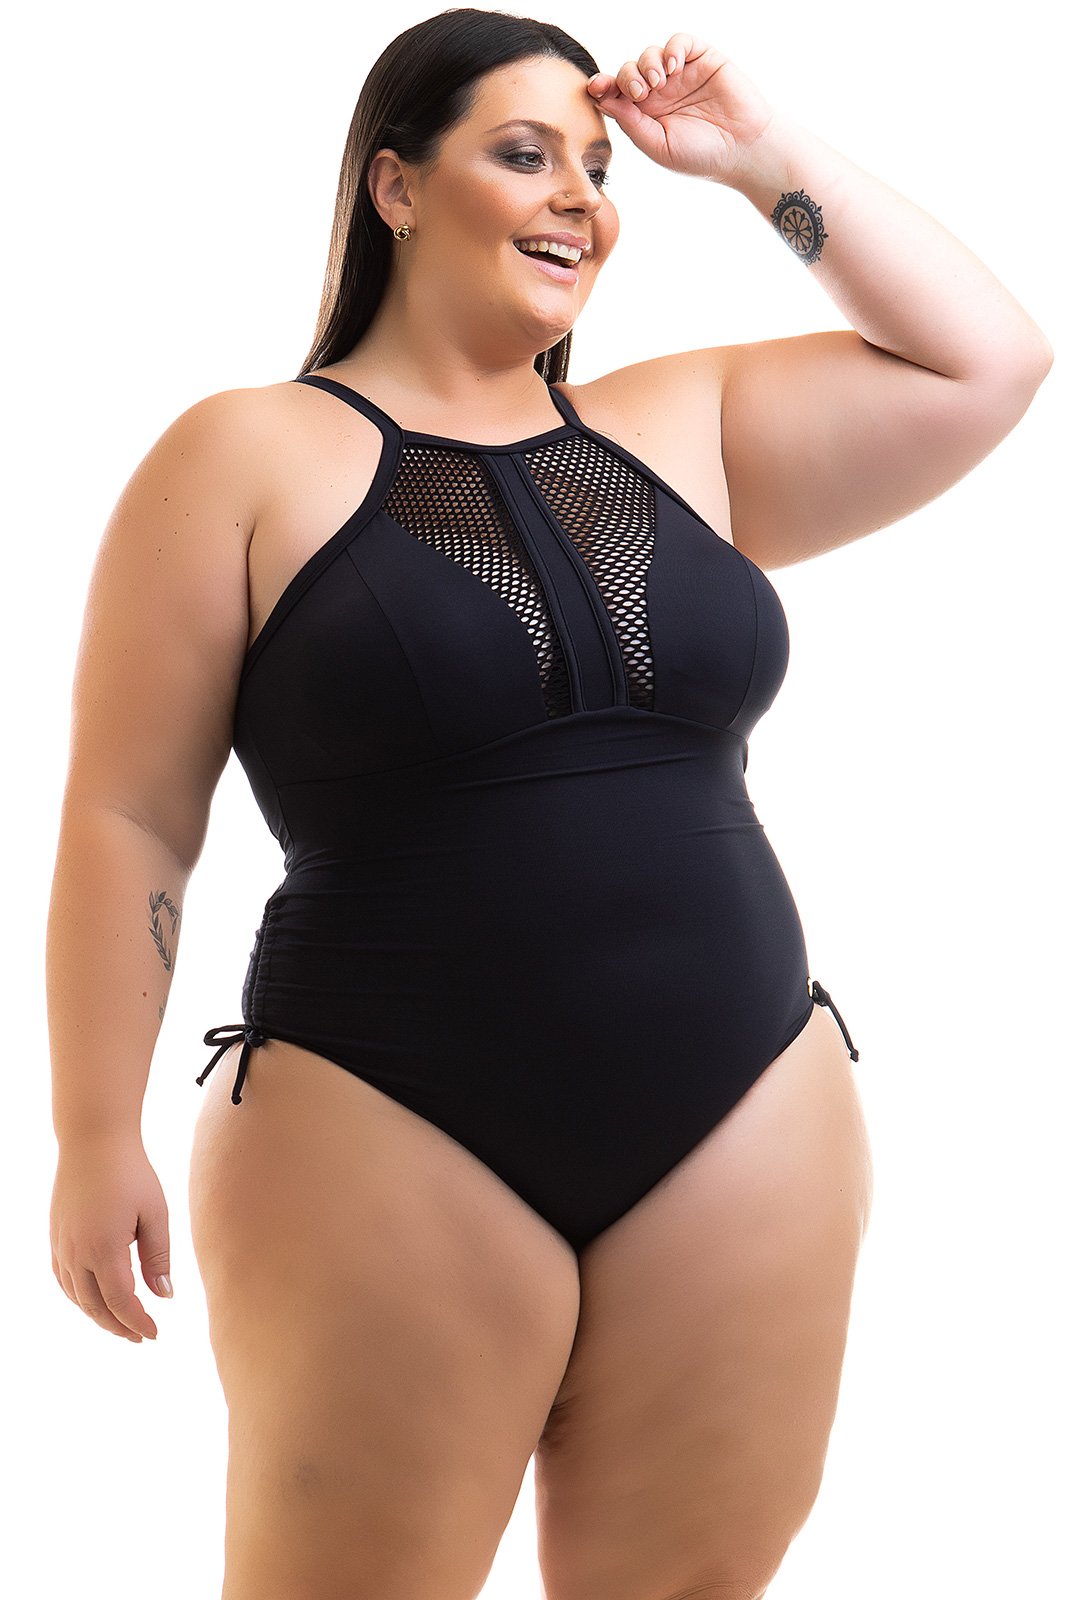 servet Sceptisch Eerlijk Plus Size Black High Neck Swimsuit With Openwork - Swimsuit Cleya Preto -  Acquarosa